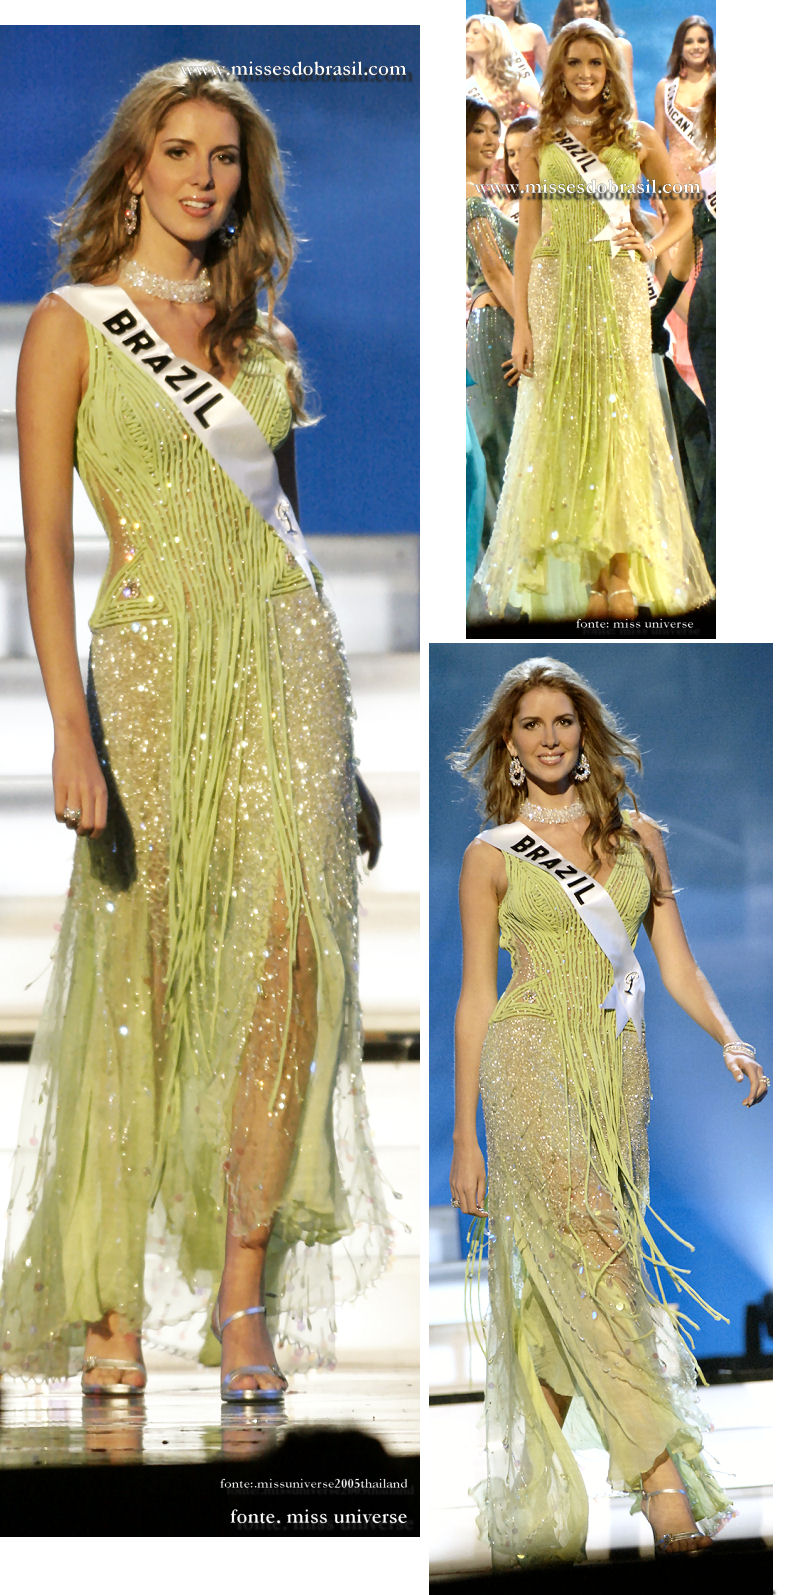 Miss Brasil 2005